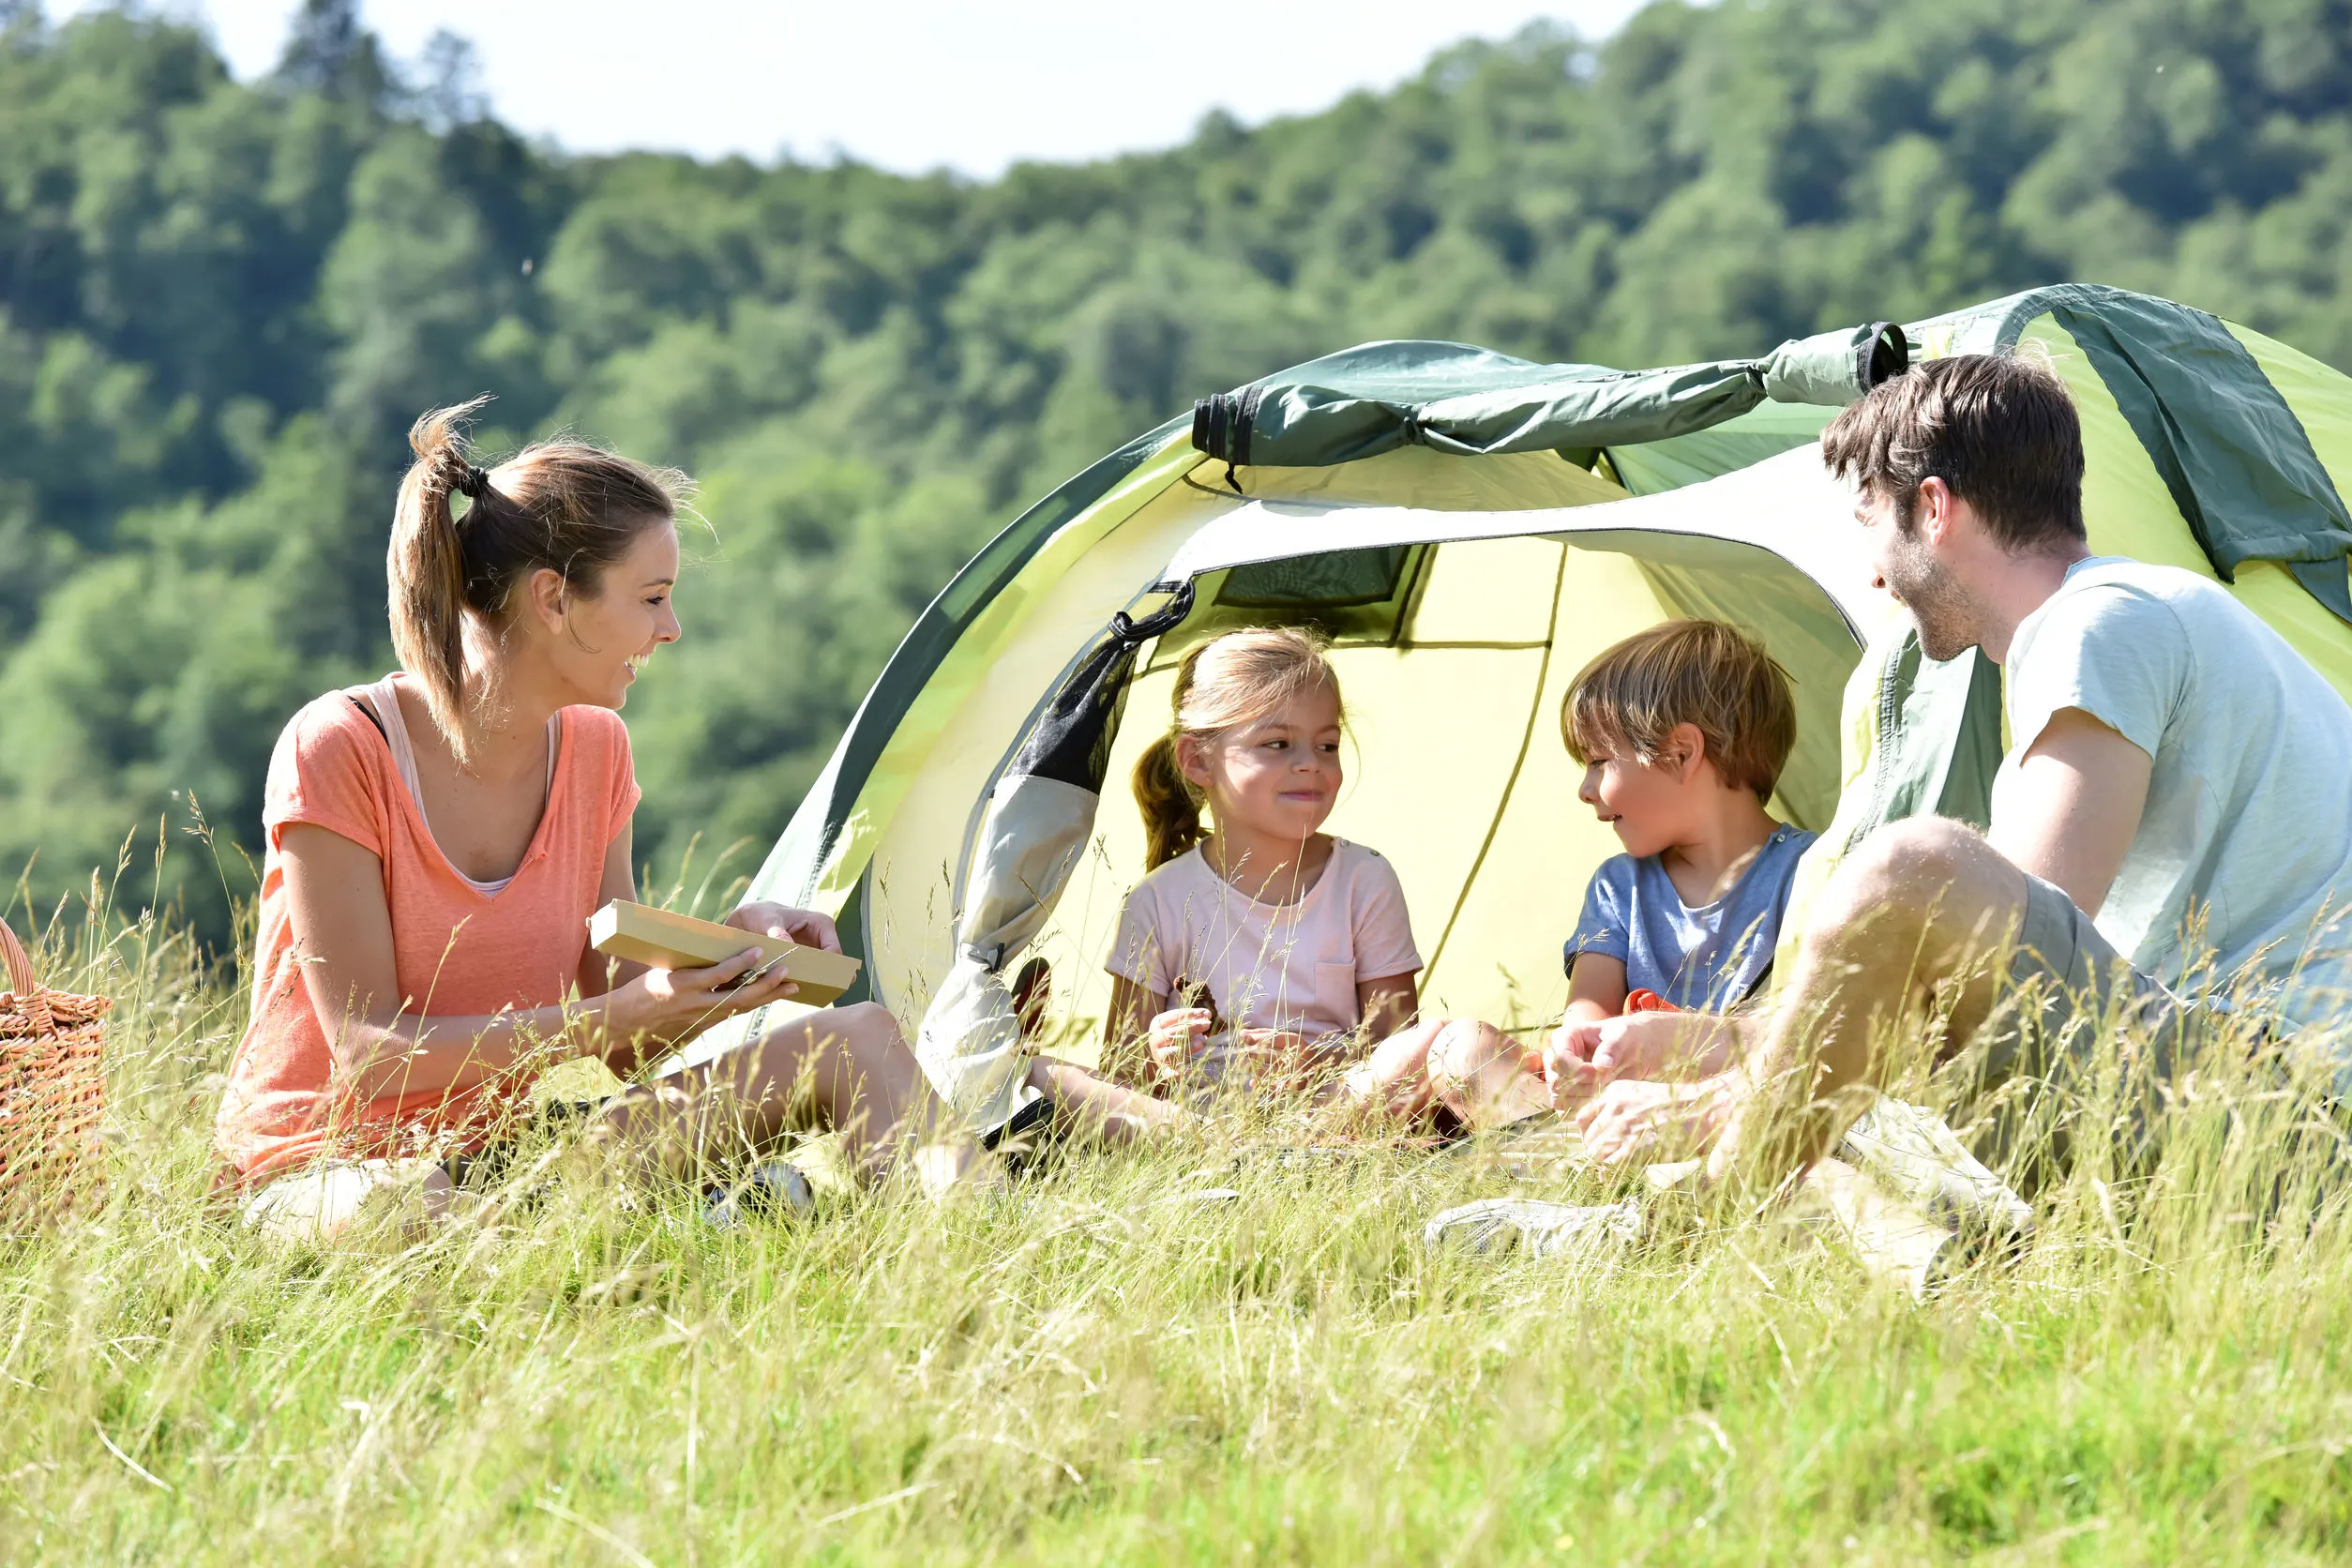 Top 17 hippe natuur campings met kinderen in Nederland - Mamaliefde.nl